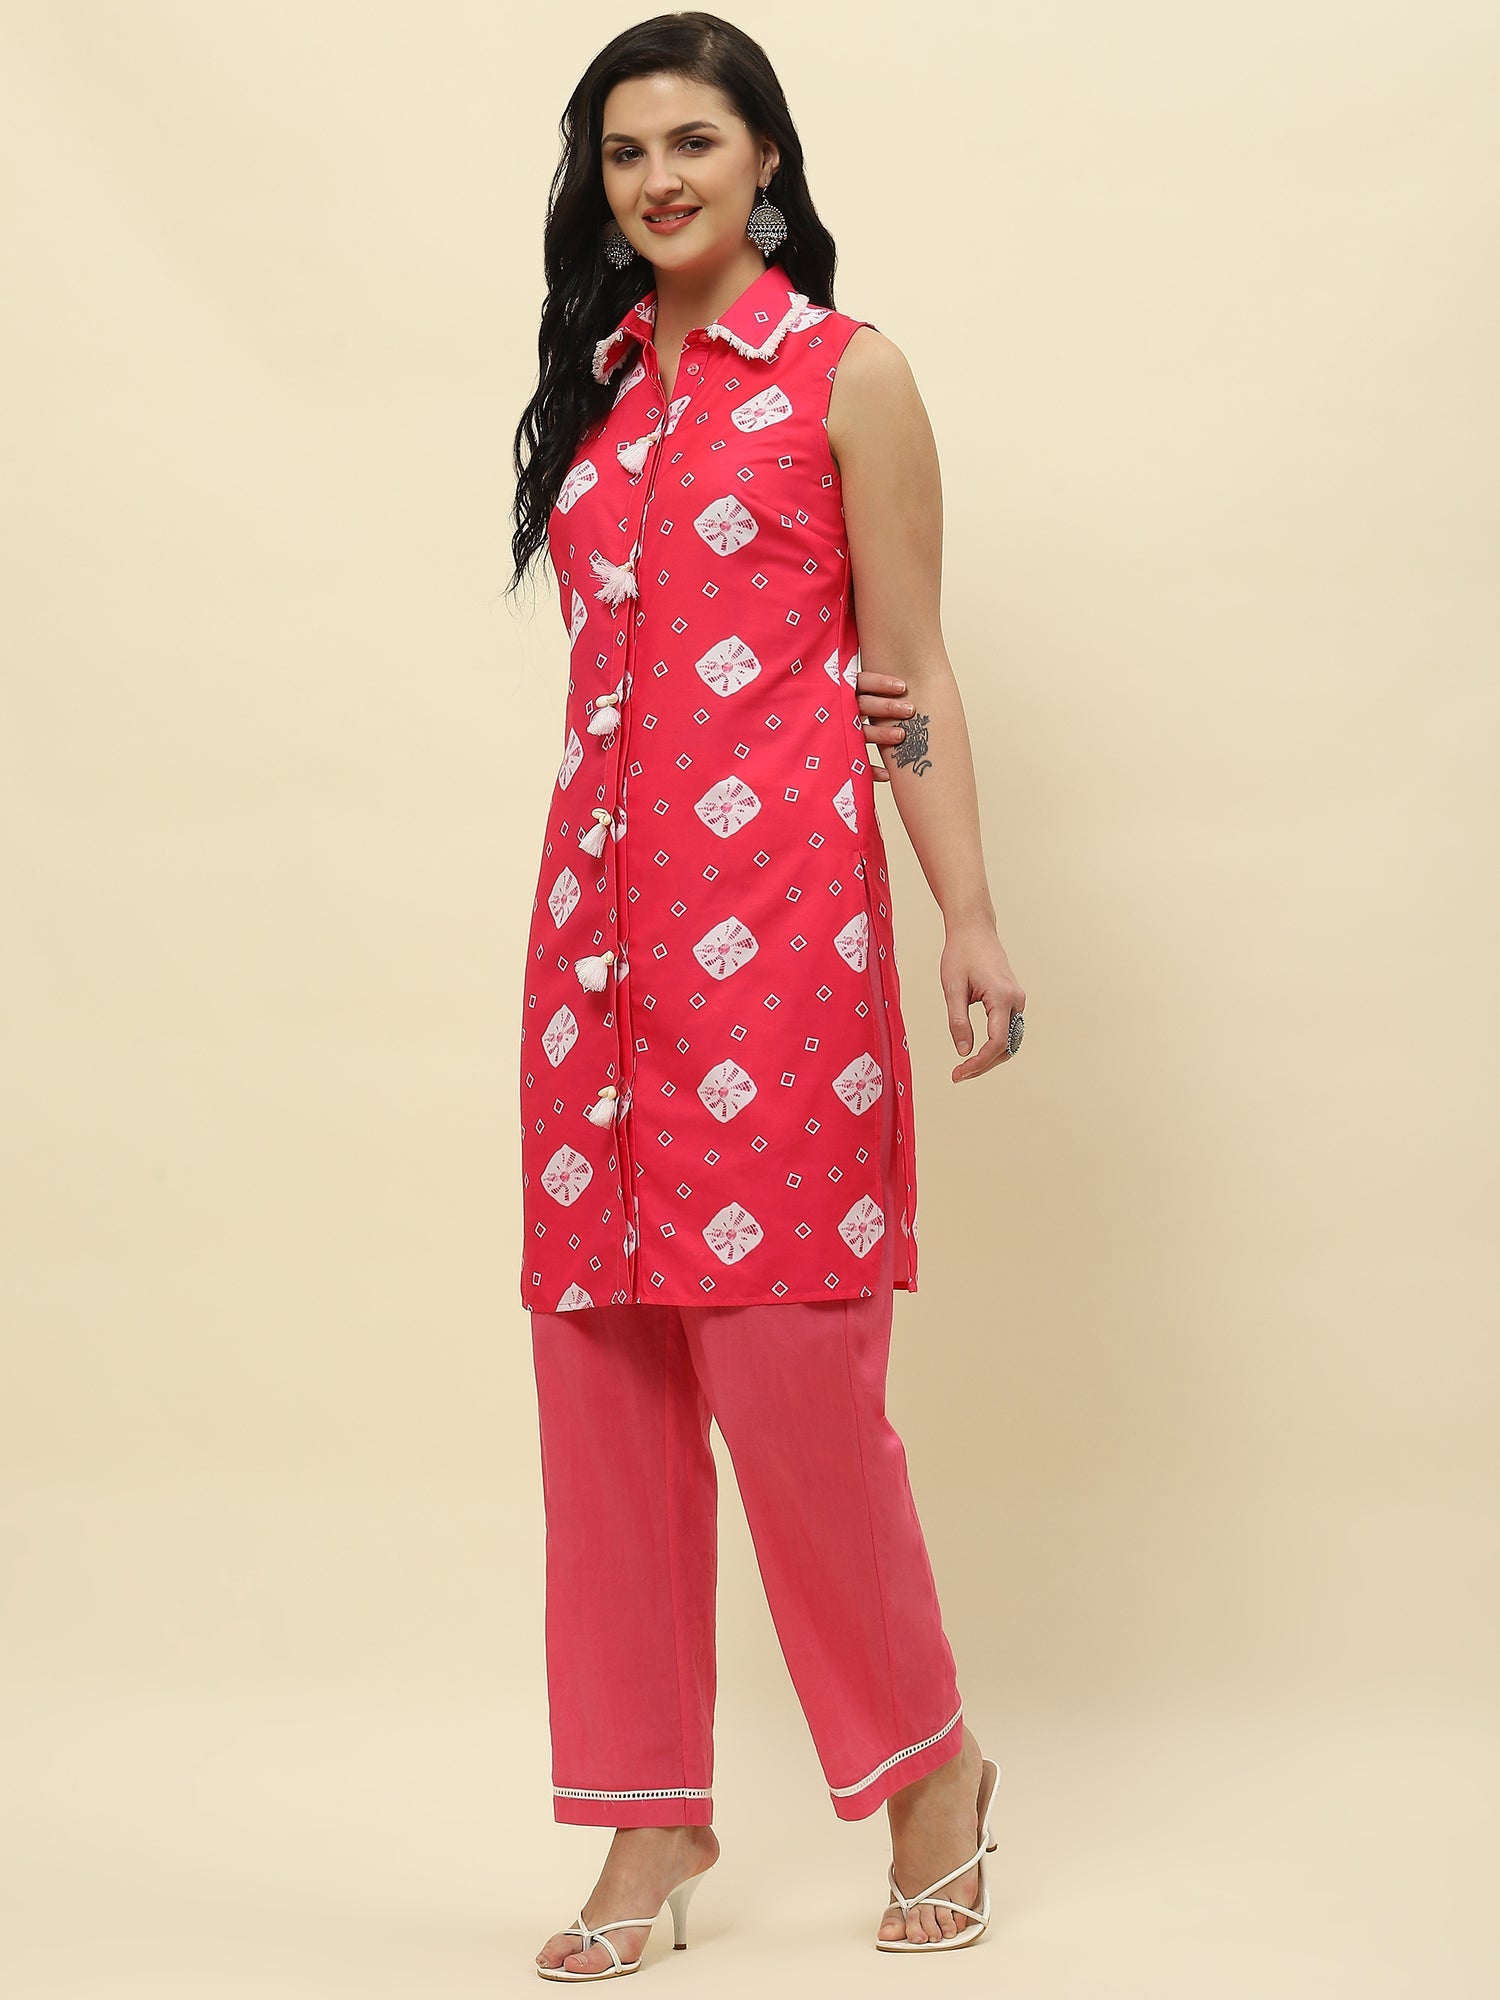 Pink and white Bandhej print sleeveless kurta set